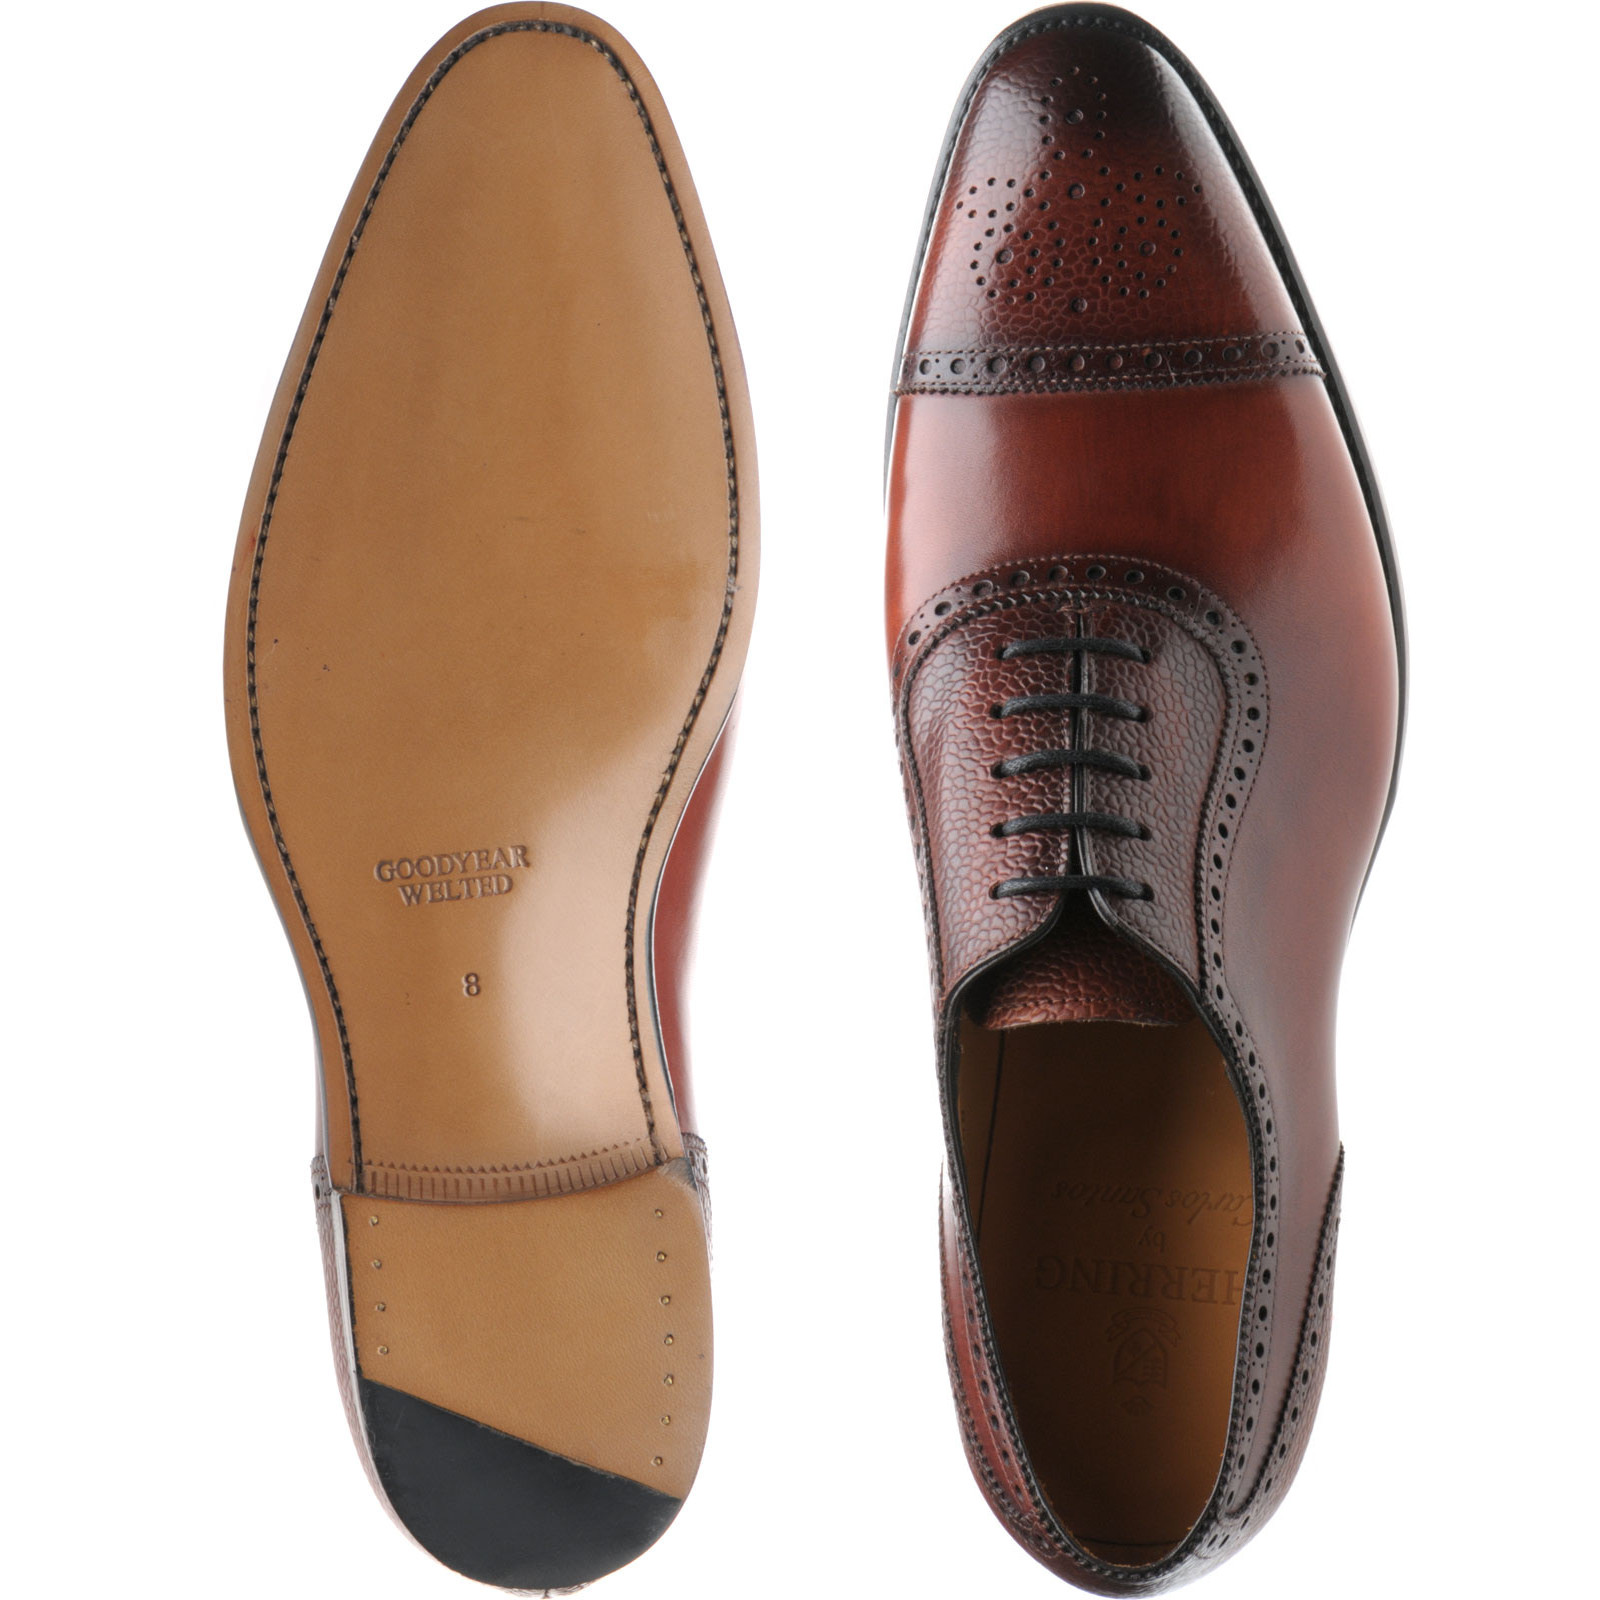 Herring shoes | Herring Classic | Wordsworth semi-brogues in Rosewood ...